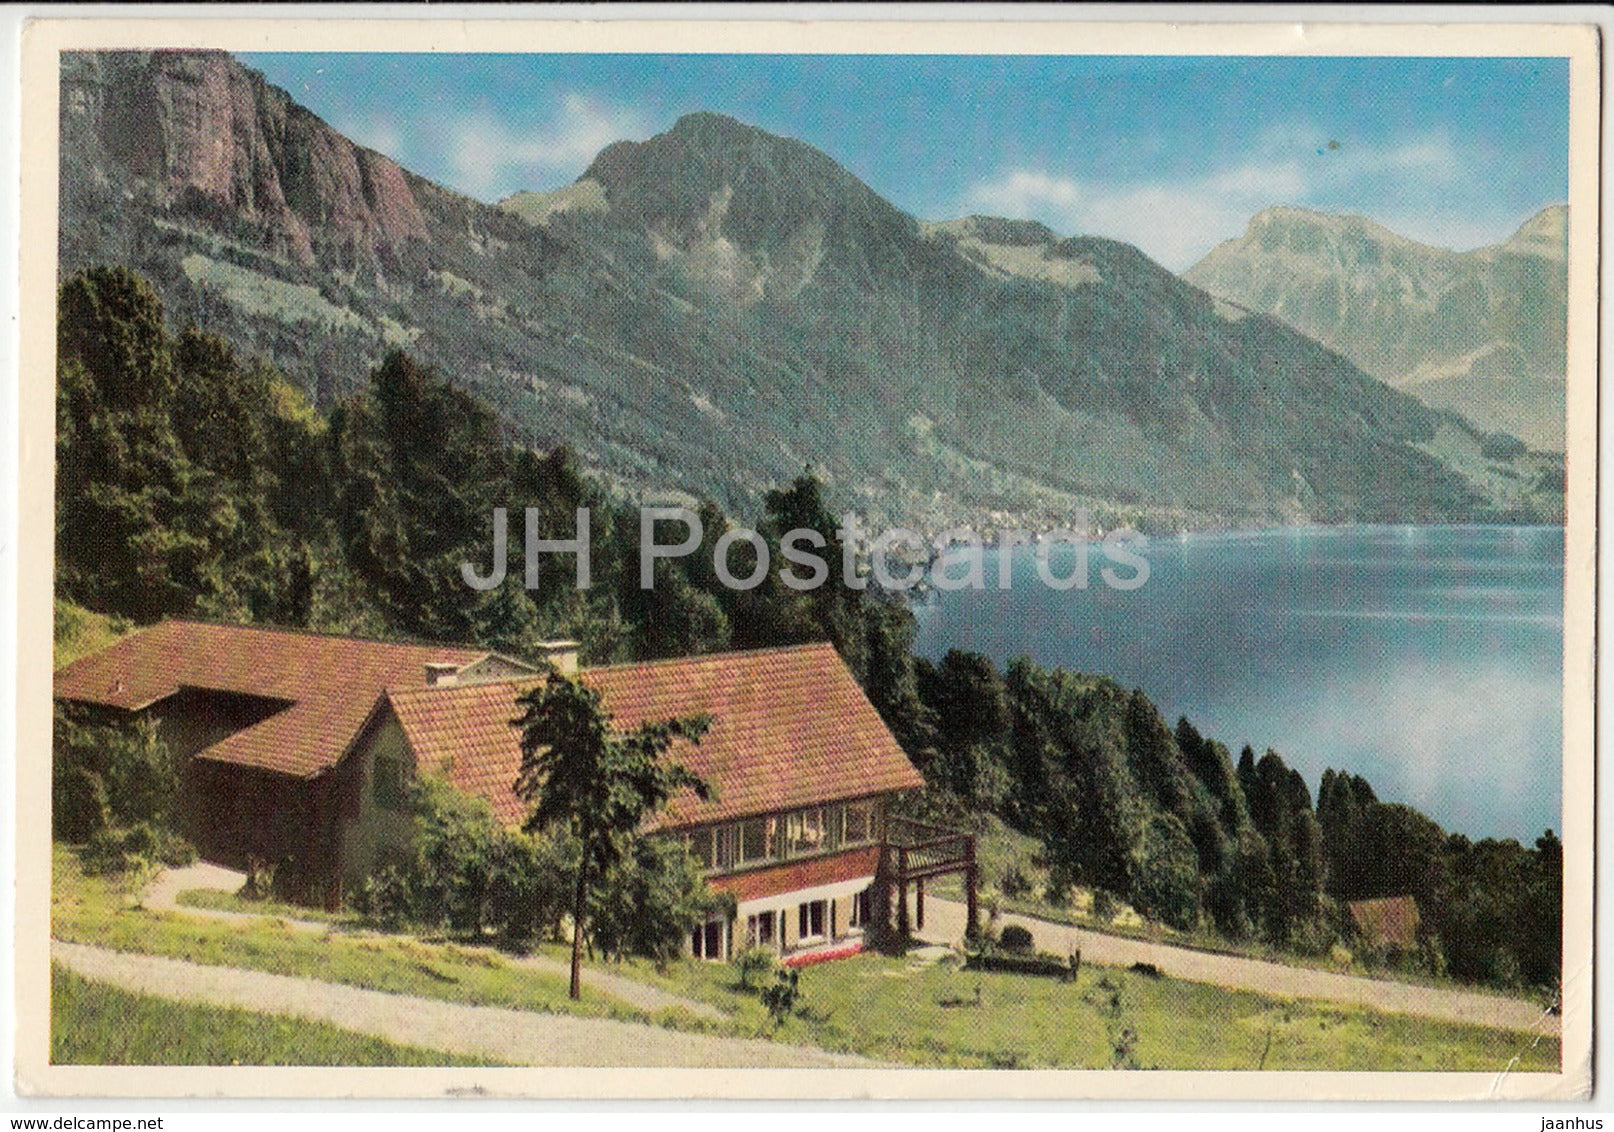 Blaukreuzheim Weggis - Switzerland - 1960 - used - JH Postcards